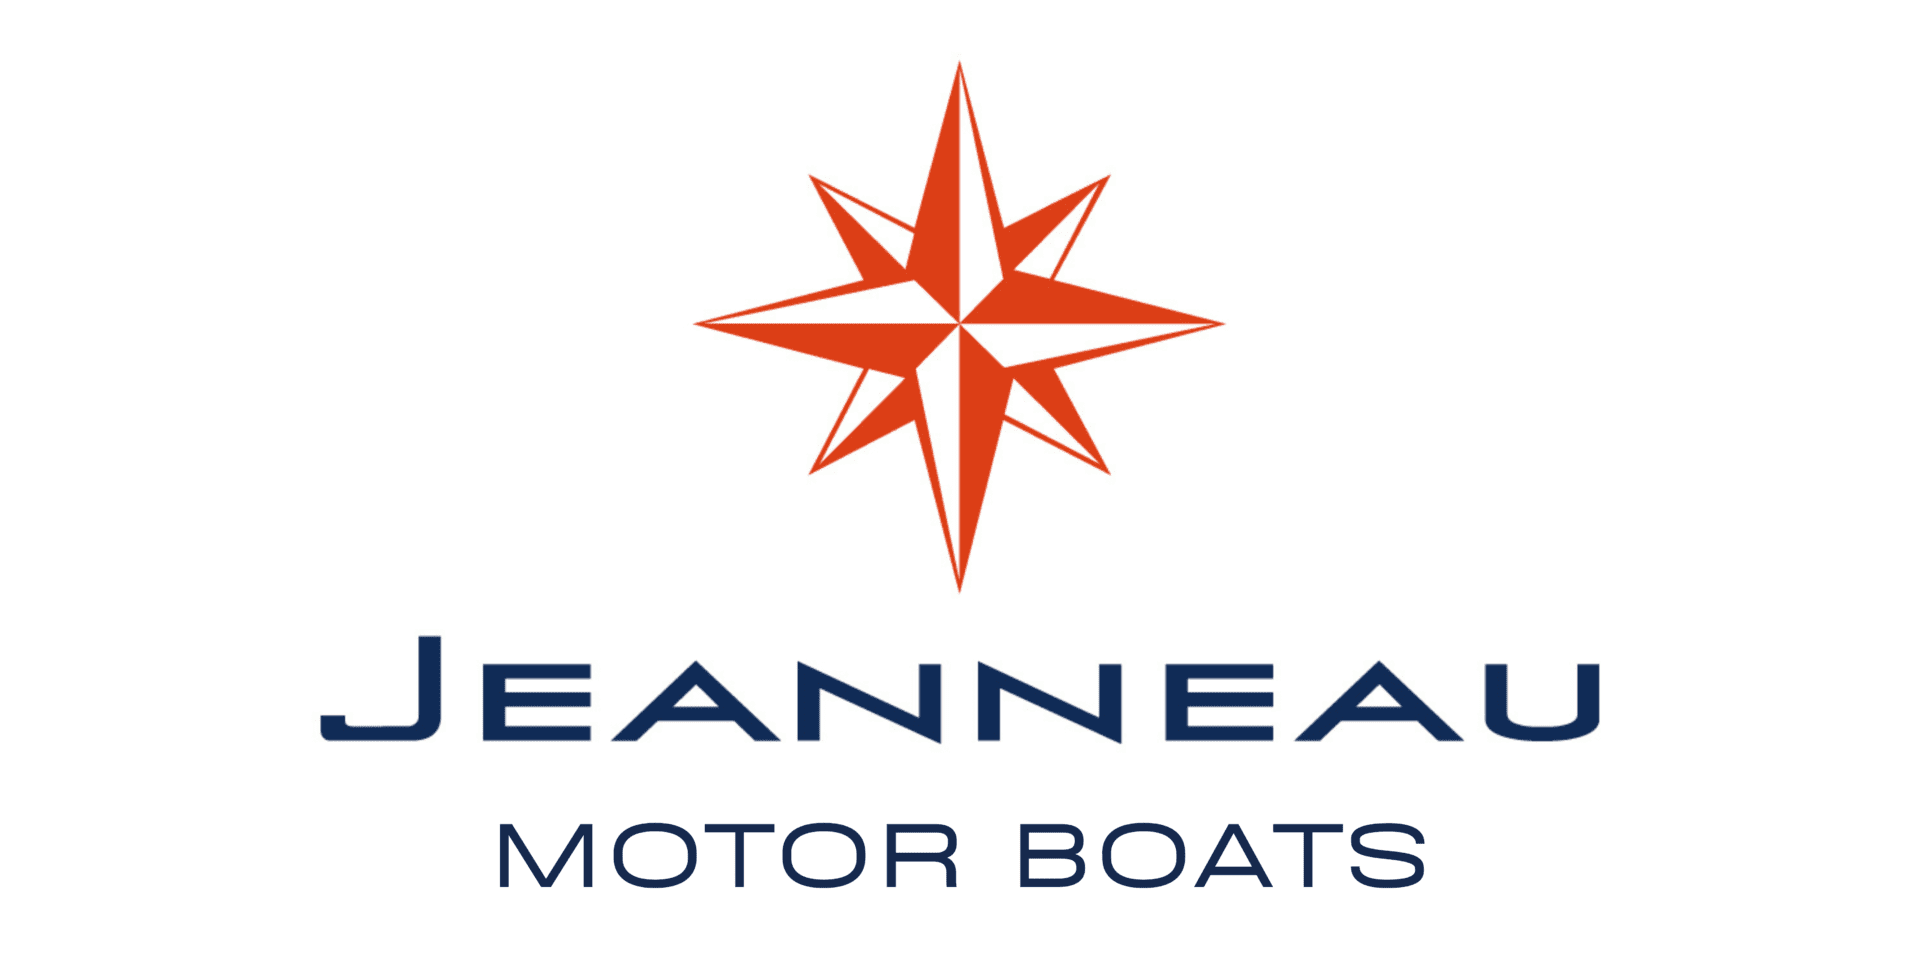 Jeanneau Motorboats